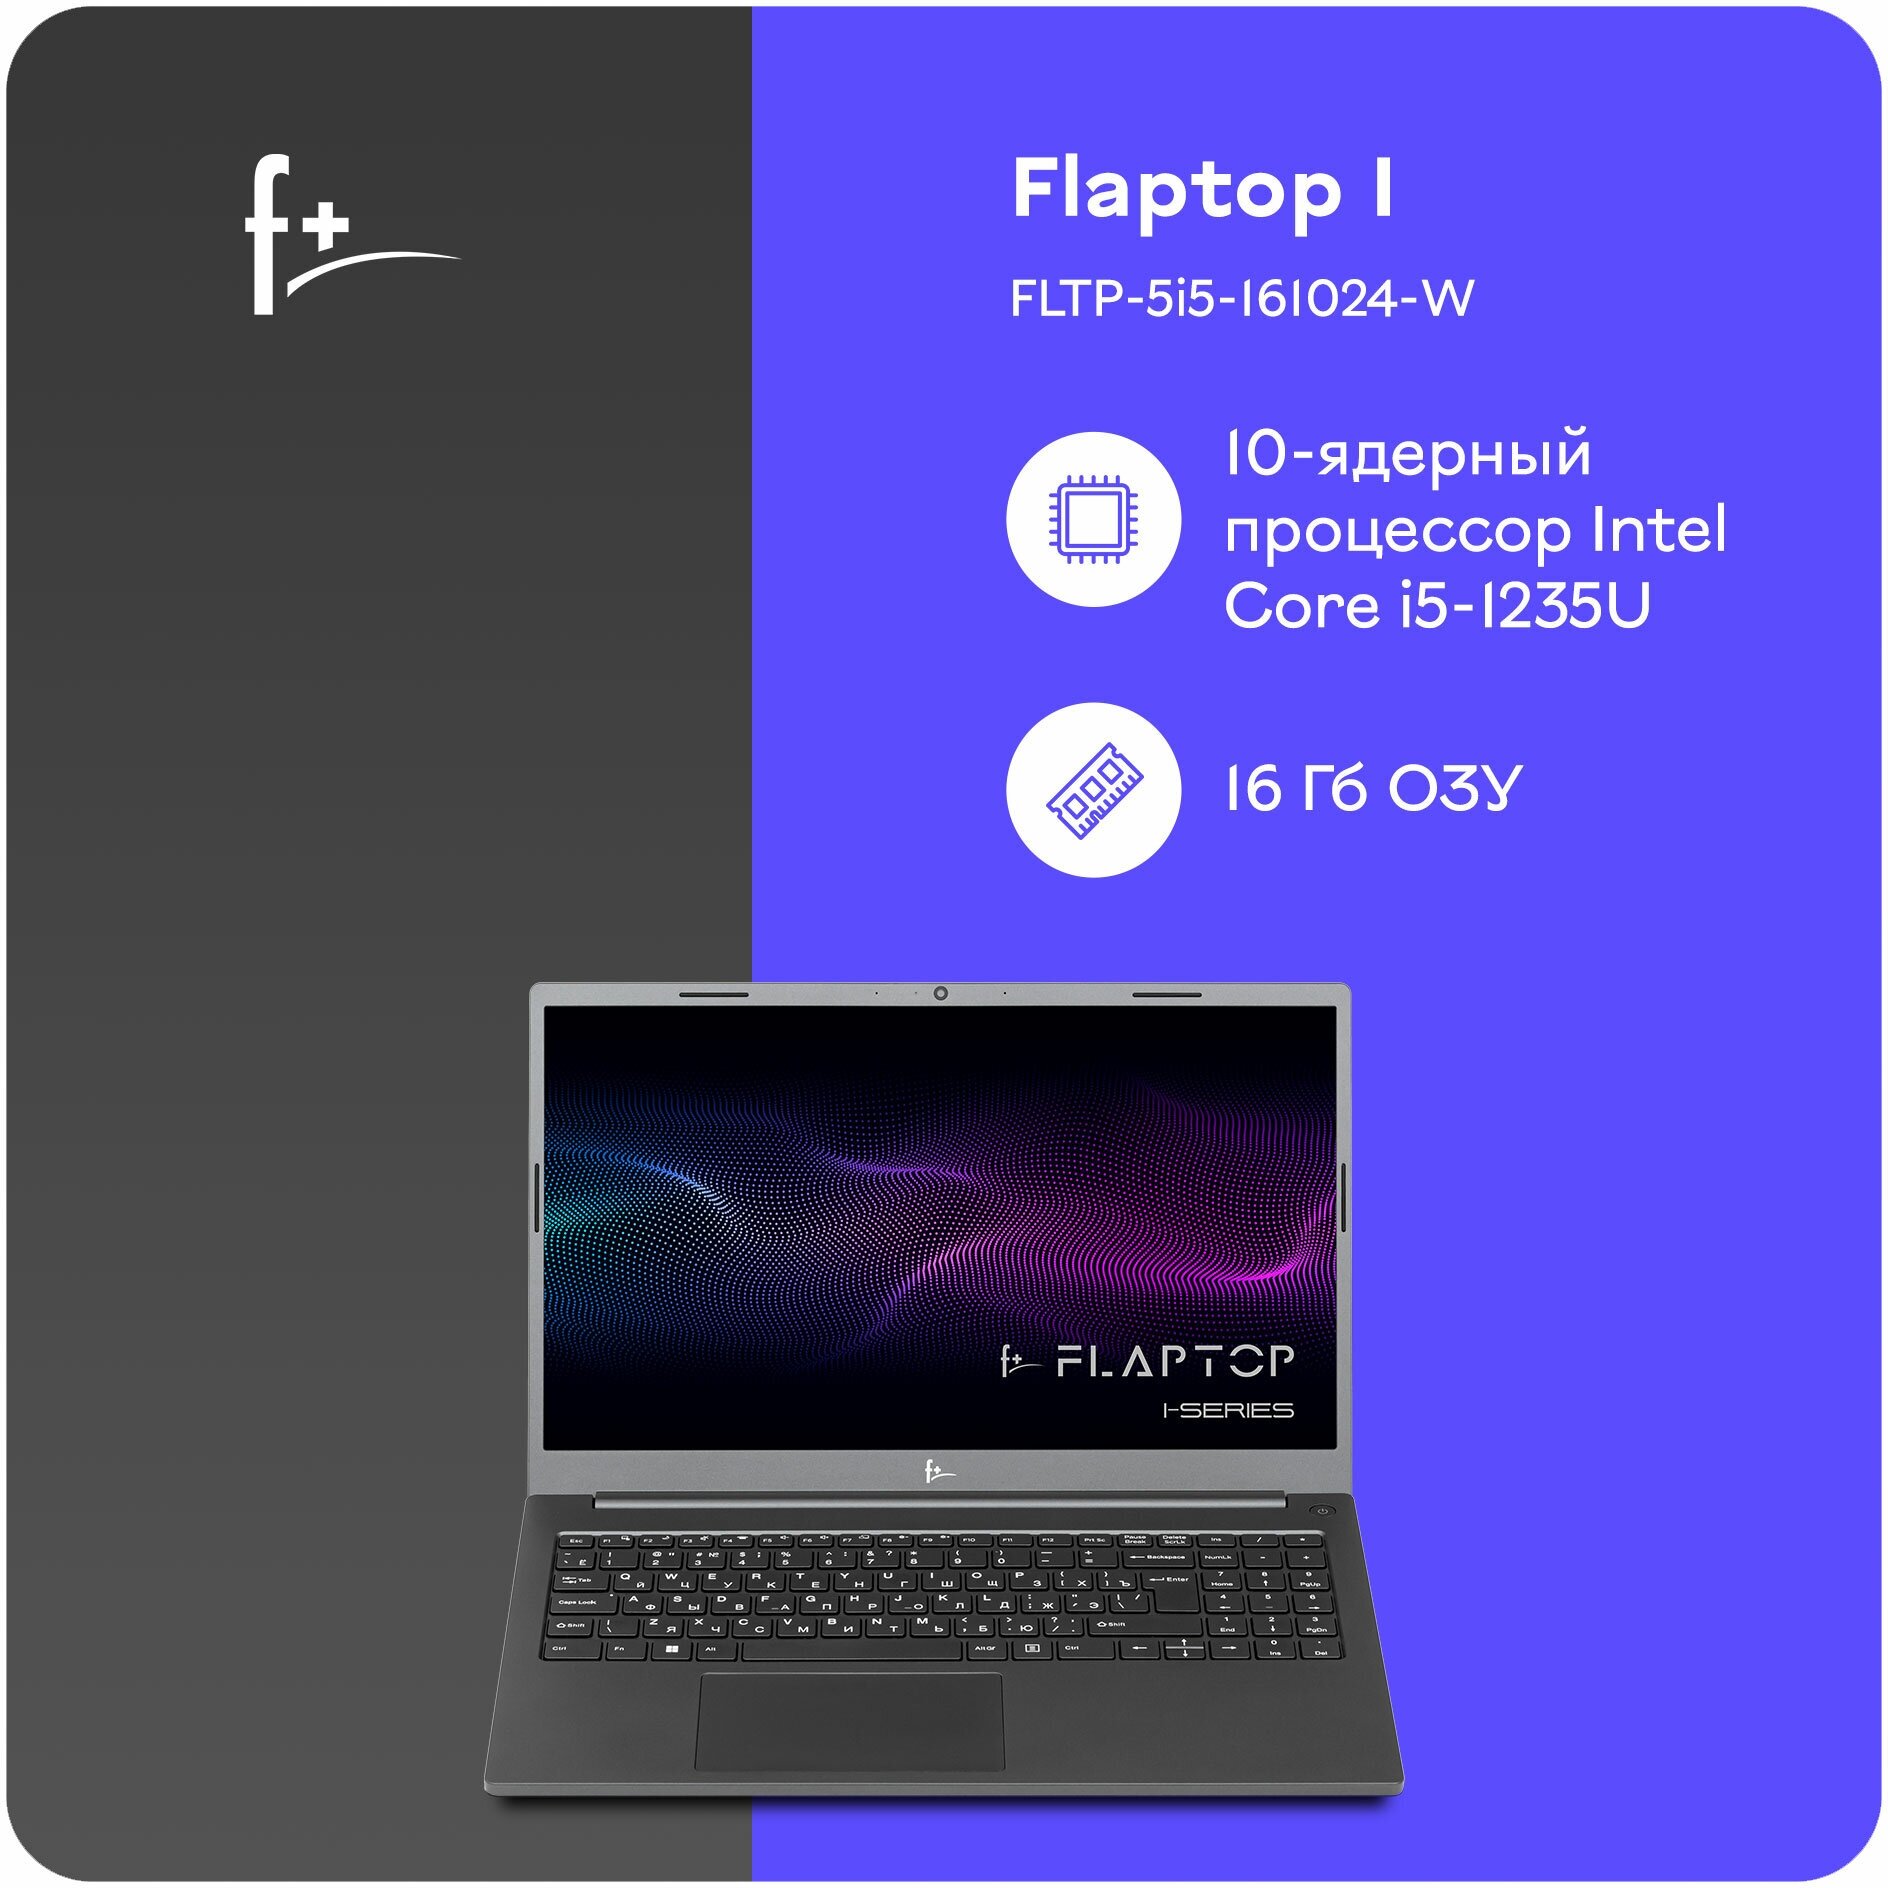 Ноутбук F+ FLAPTOP I FLTP-5i5-161024-W